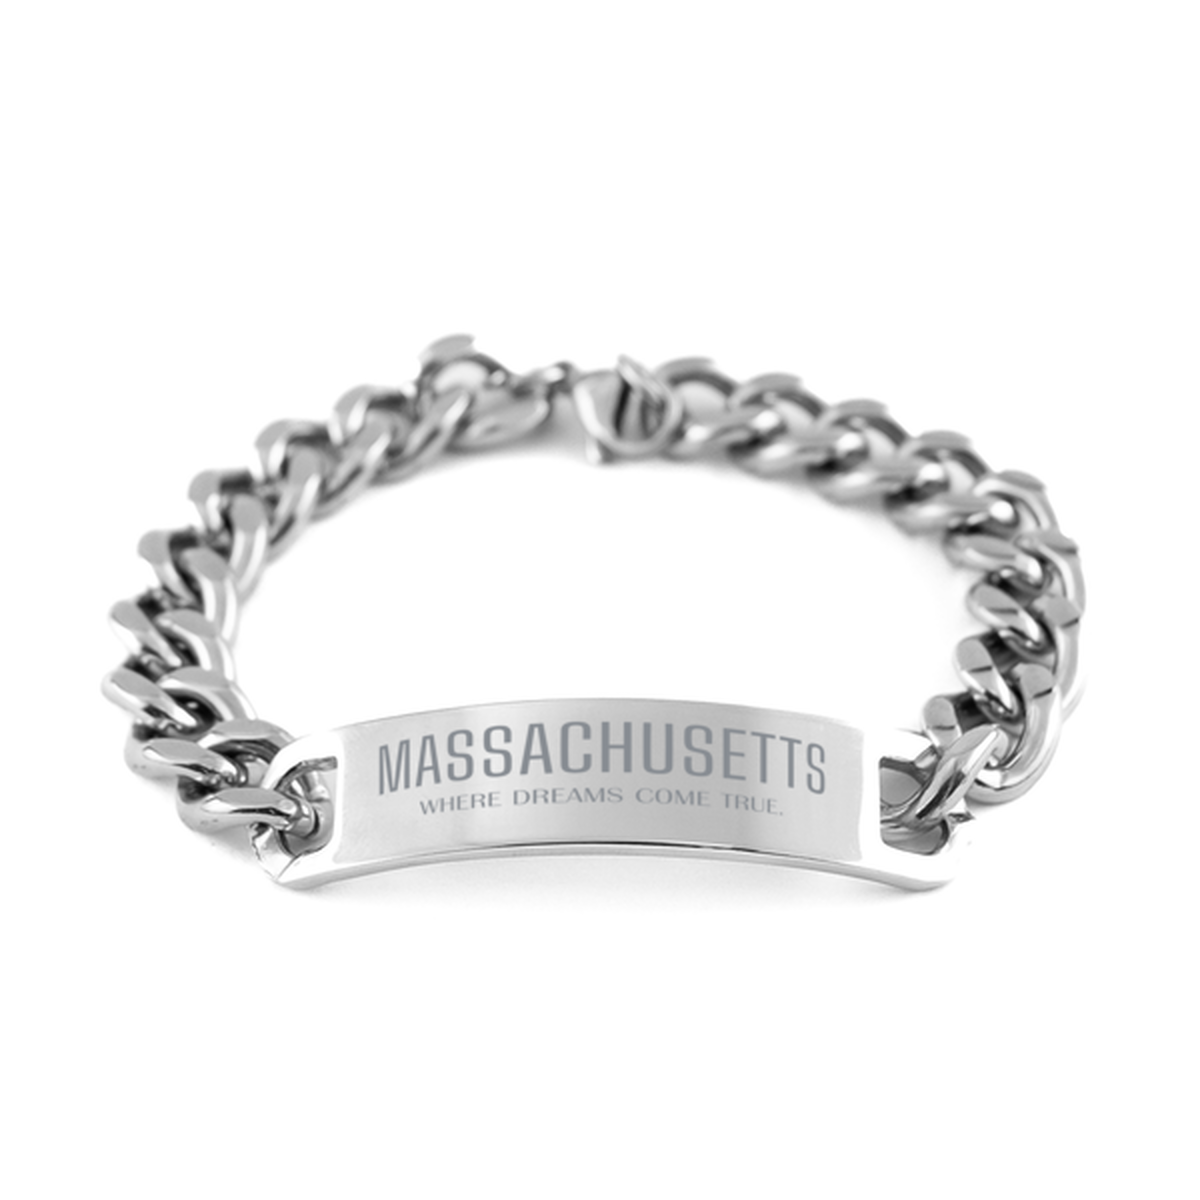 Love Massachusetts State Cuban Chain Stainless Steel Bracelet, Massachusetts Where dreams come true, Birthday Inspirational Gifts For Massachusetts Men, Women, Friends